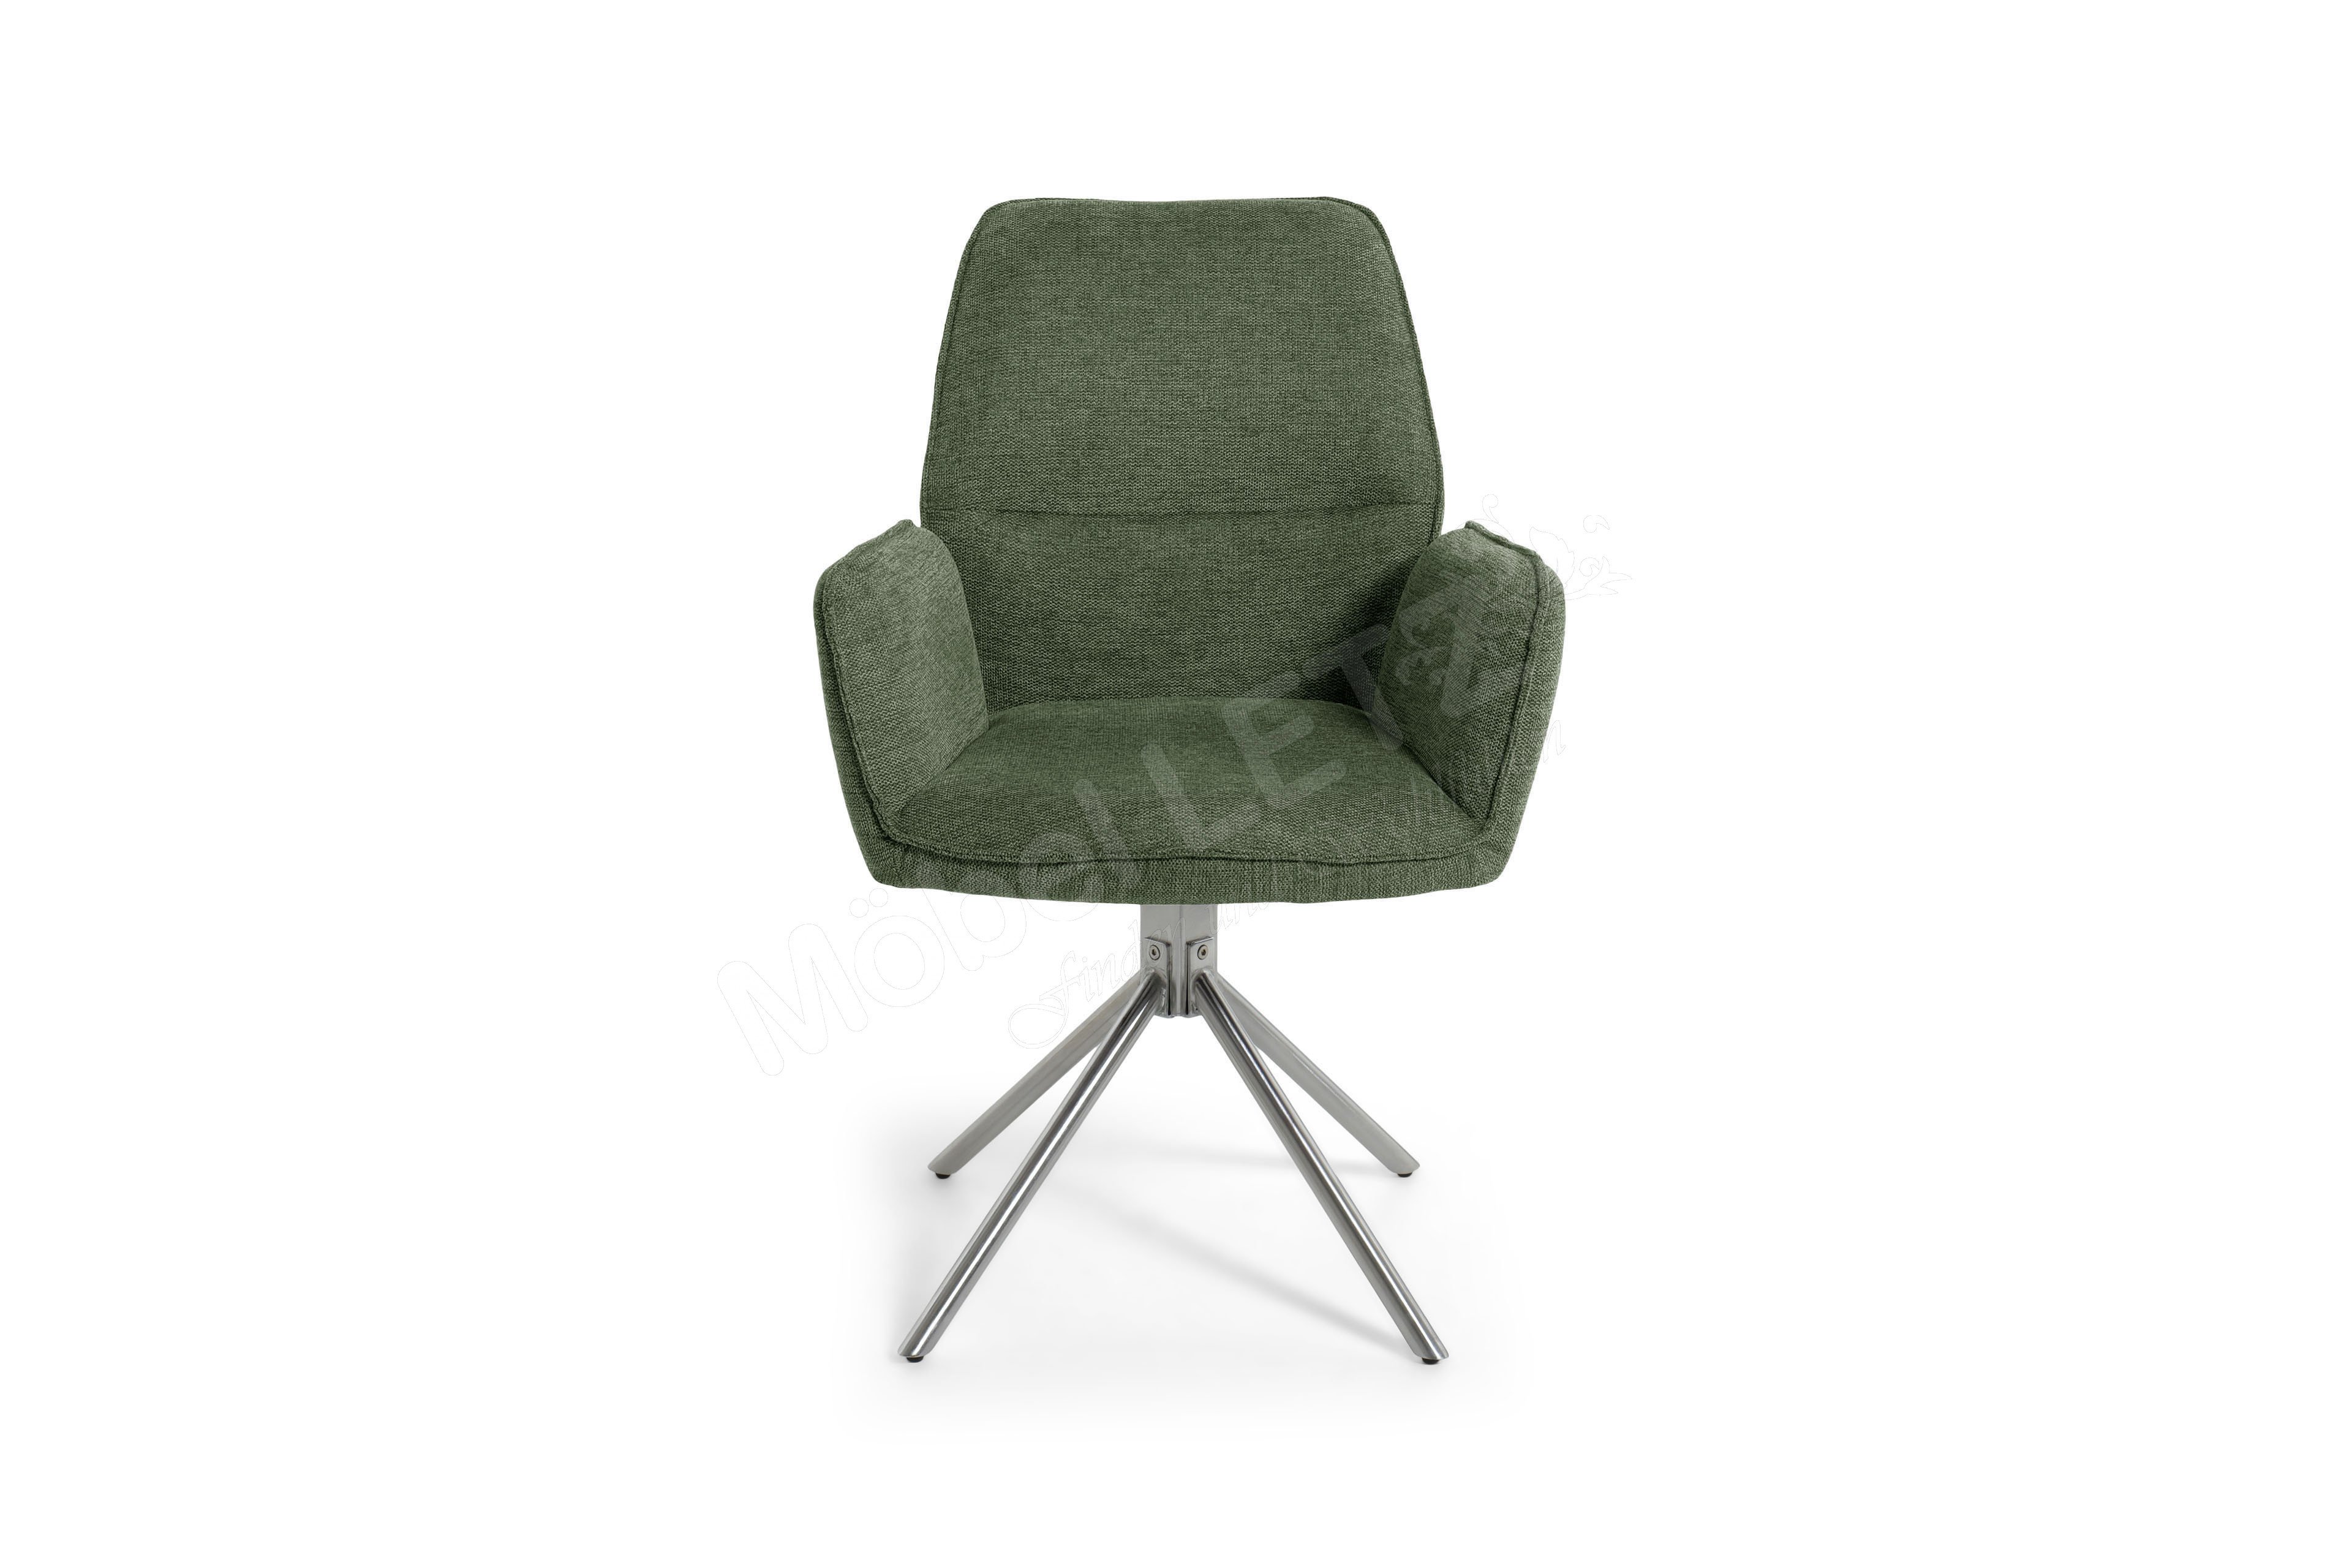 MCA furniture Stuhl Ihr Olive-Grün Greyton in Möbel Online-Shop - | Letz